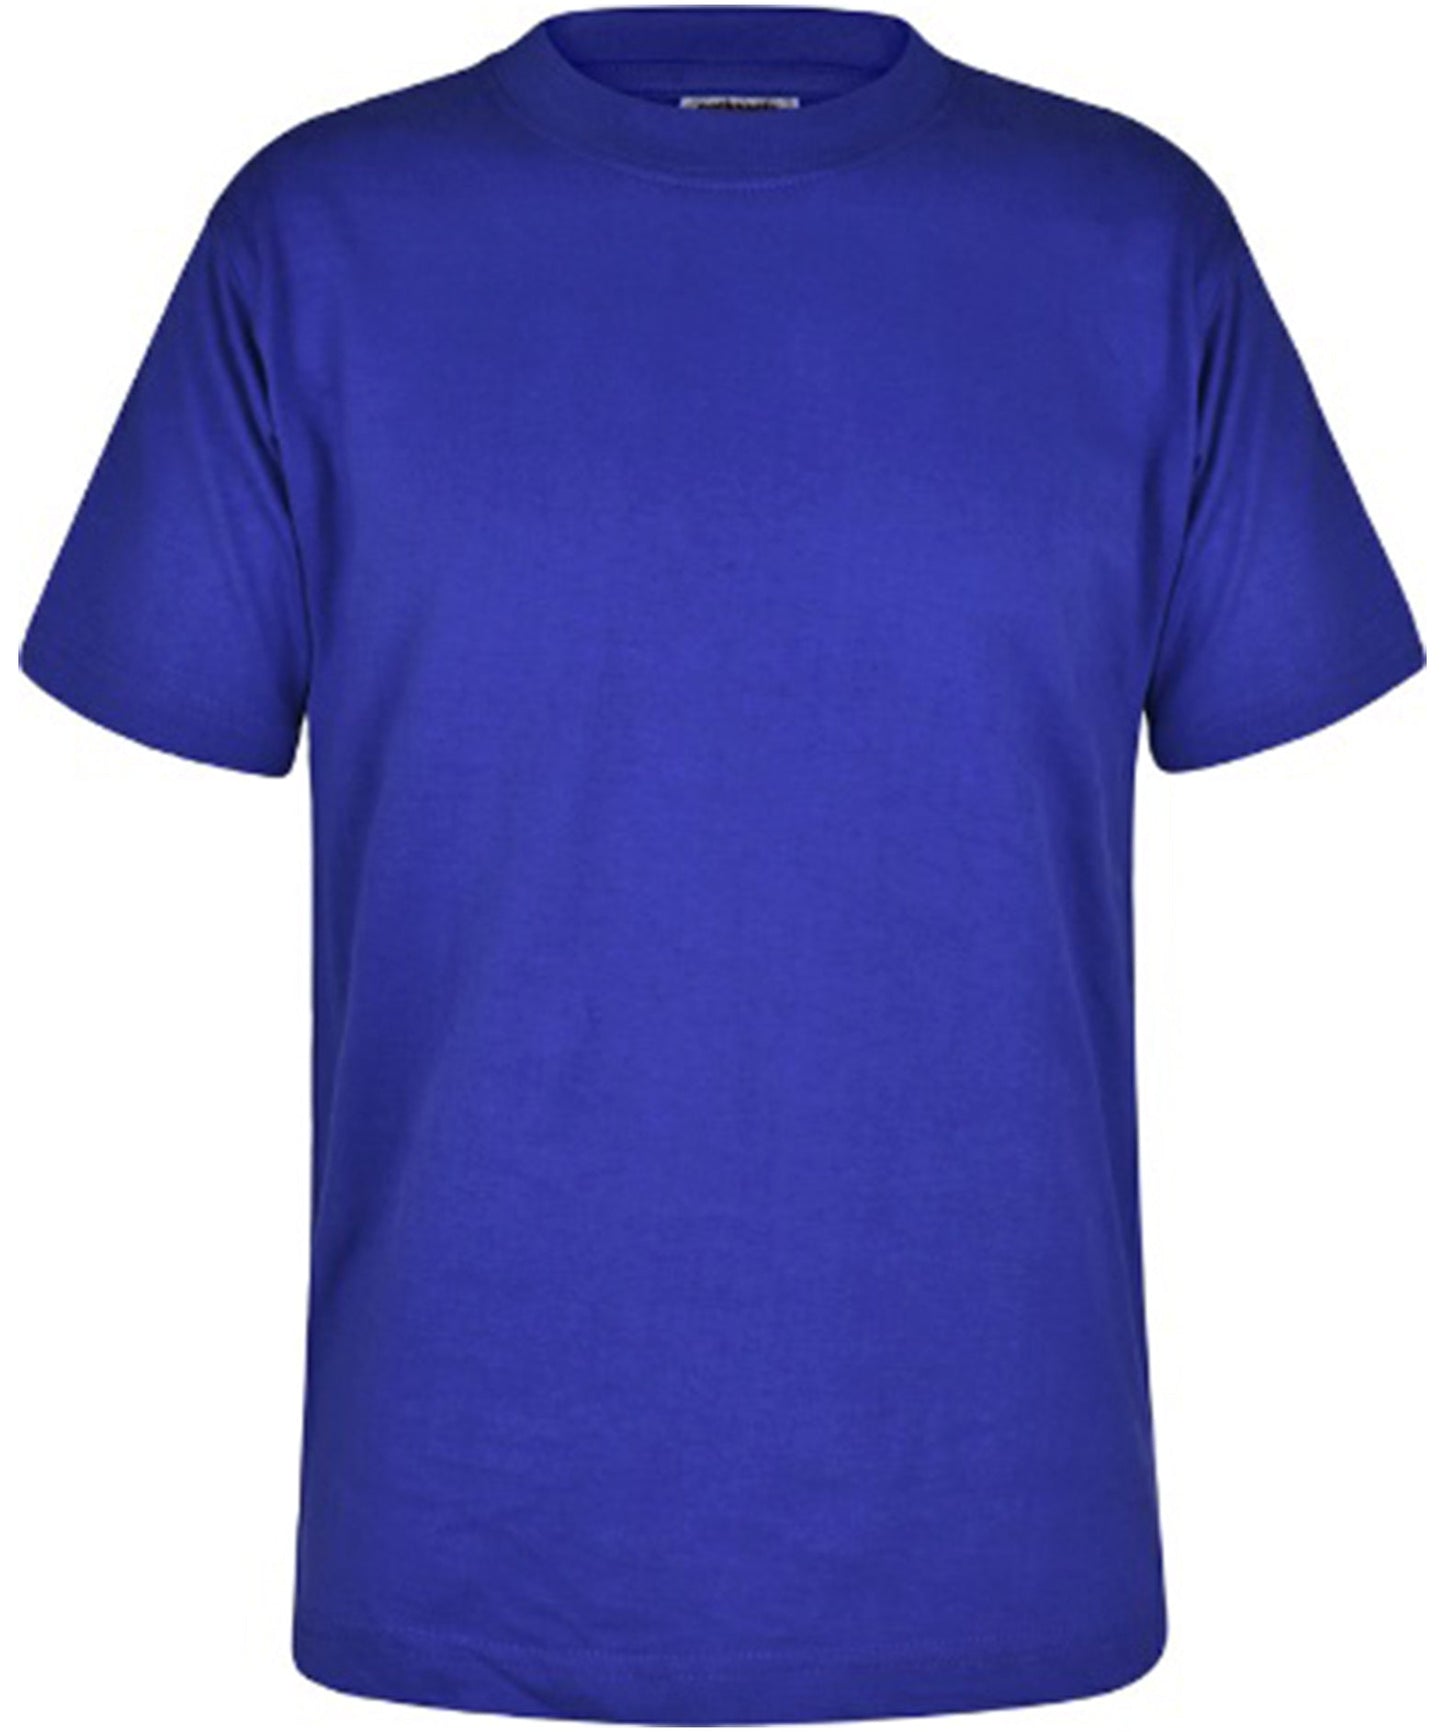 Royal Blue - Unisex Cotton T-Shirt